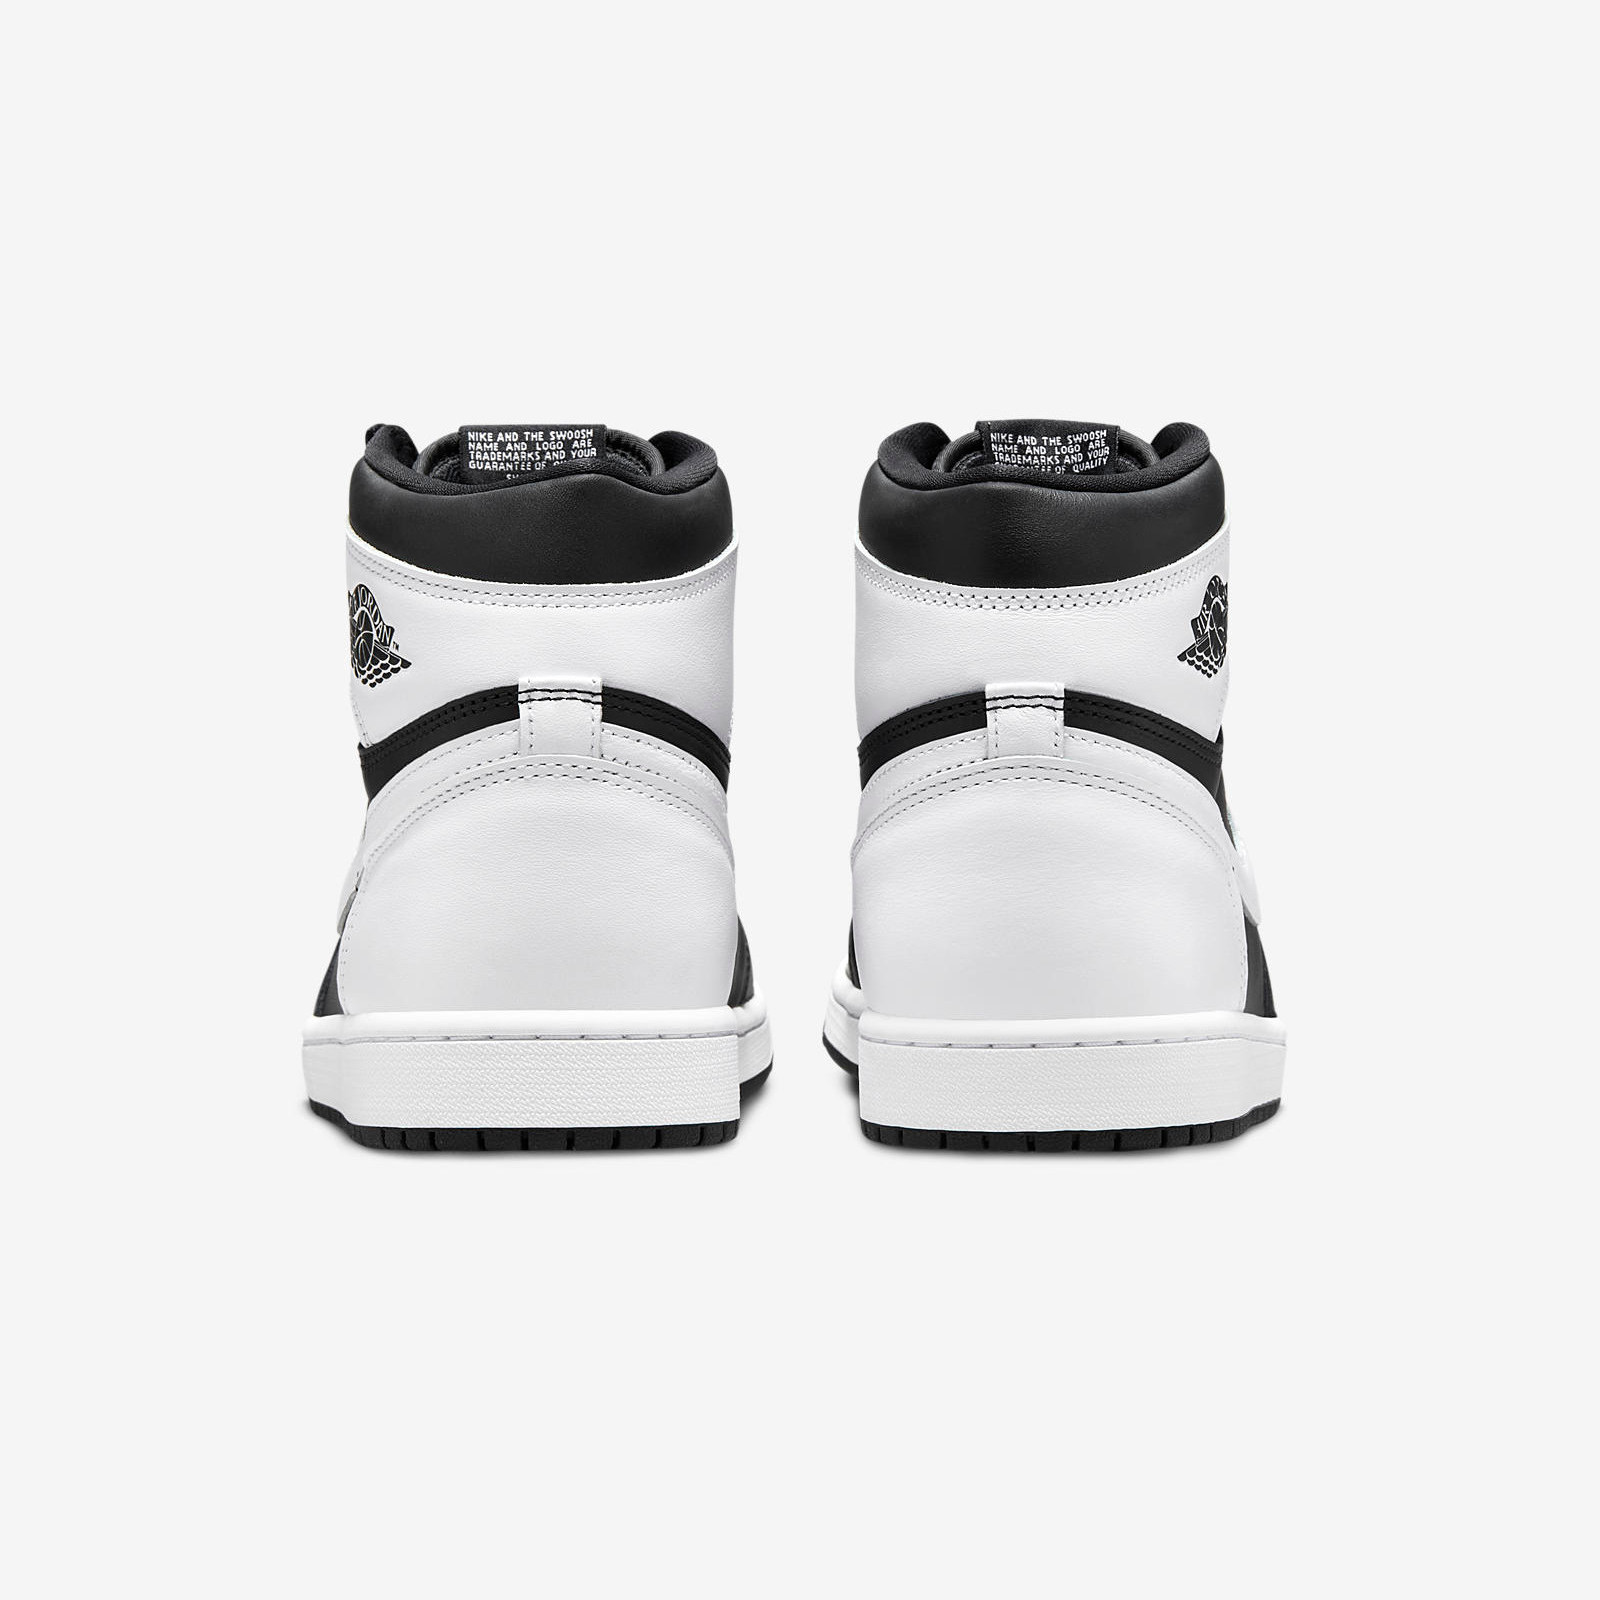 Air Jordan 1 Retro High OG
Black / White